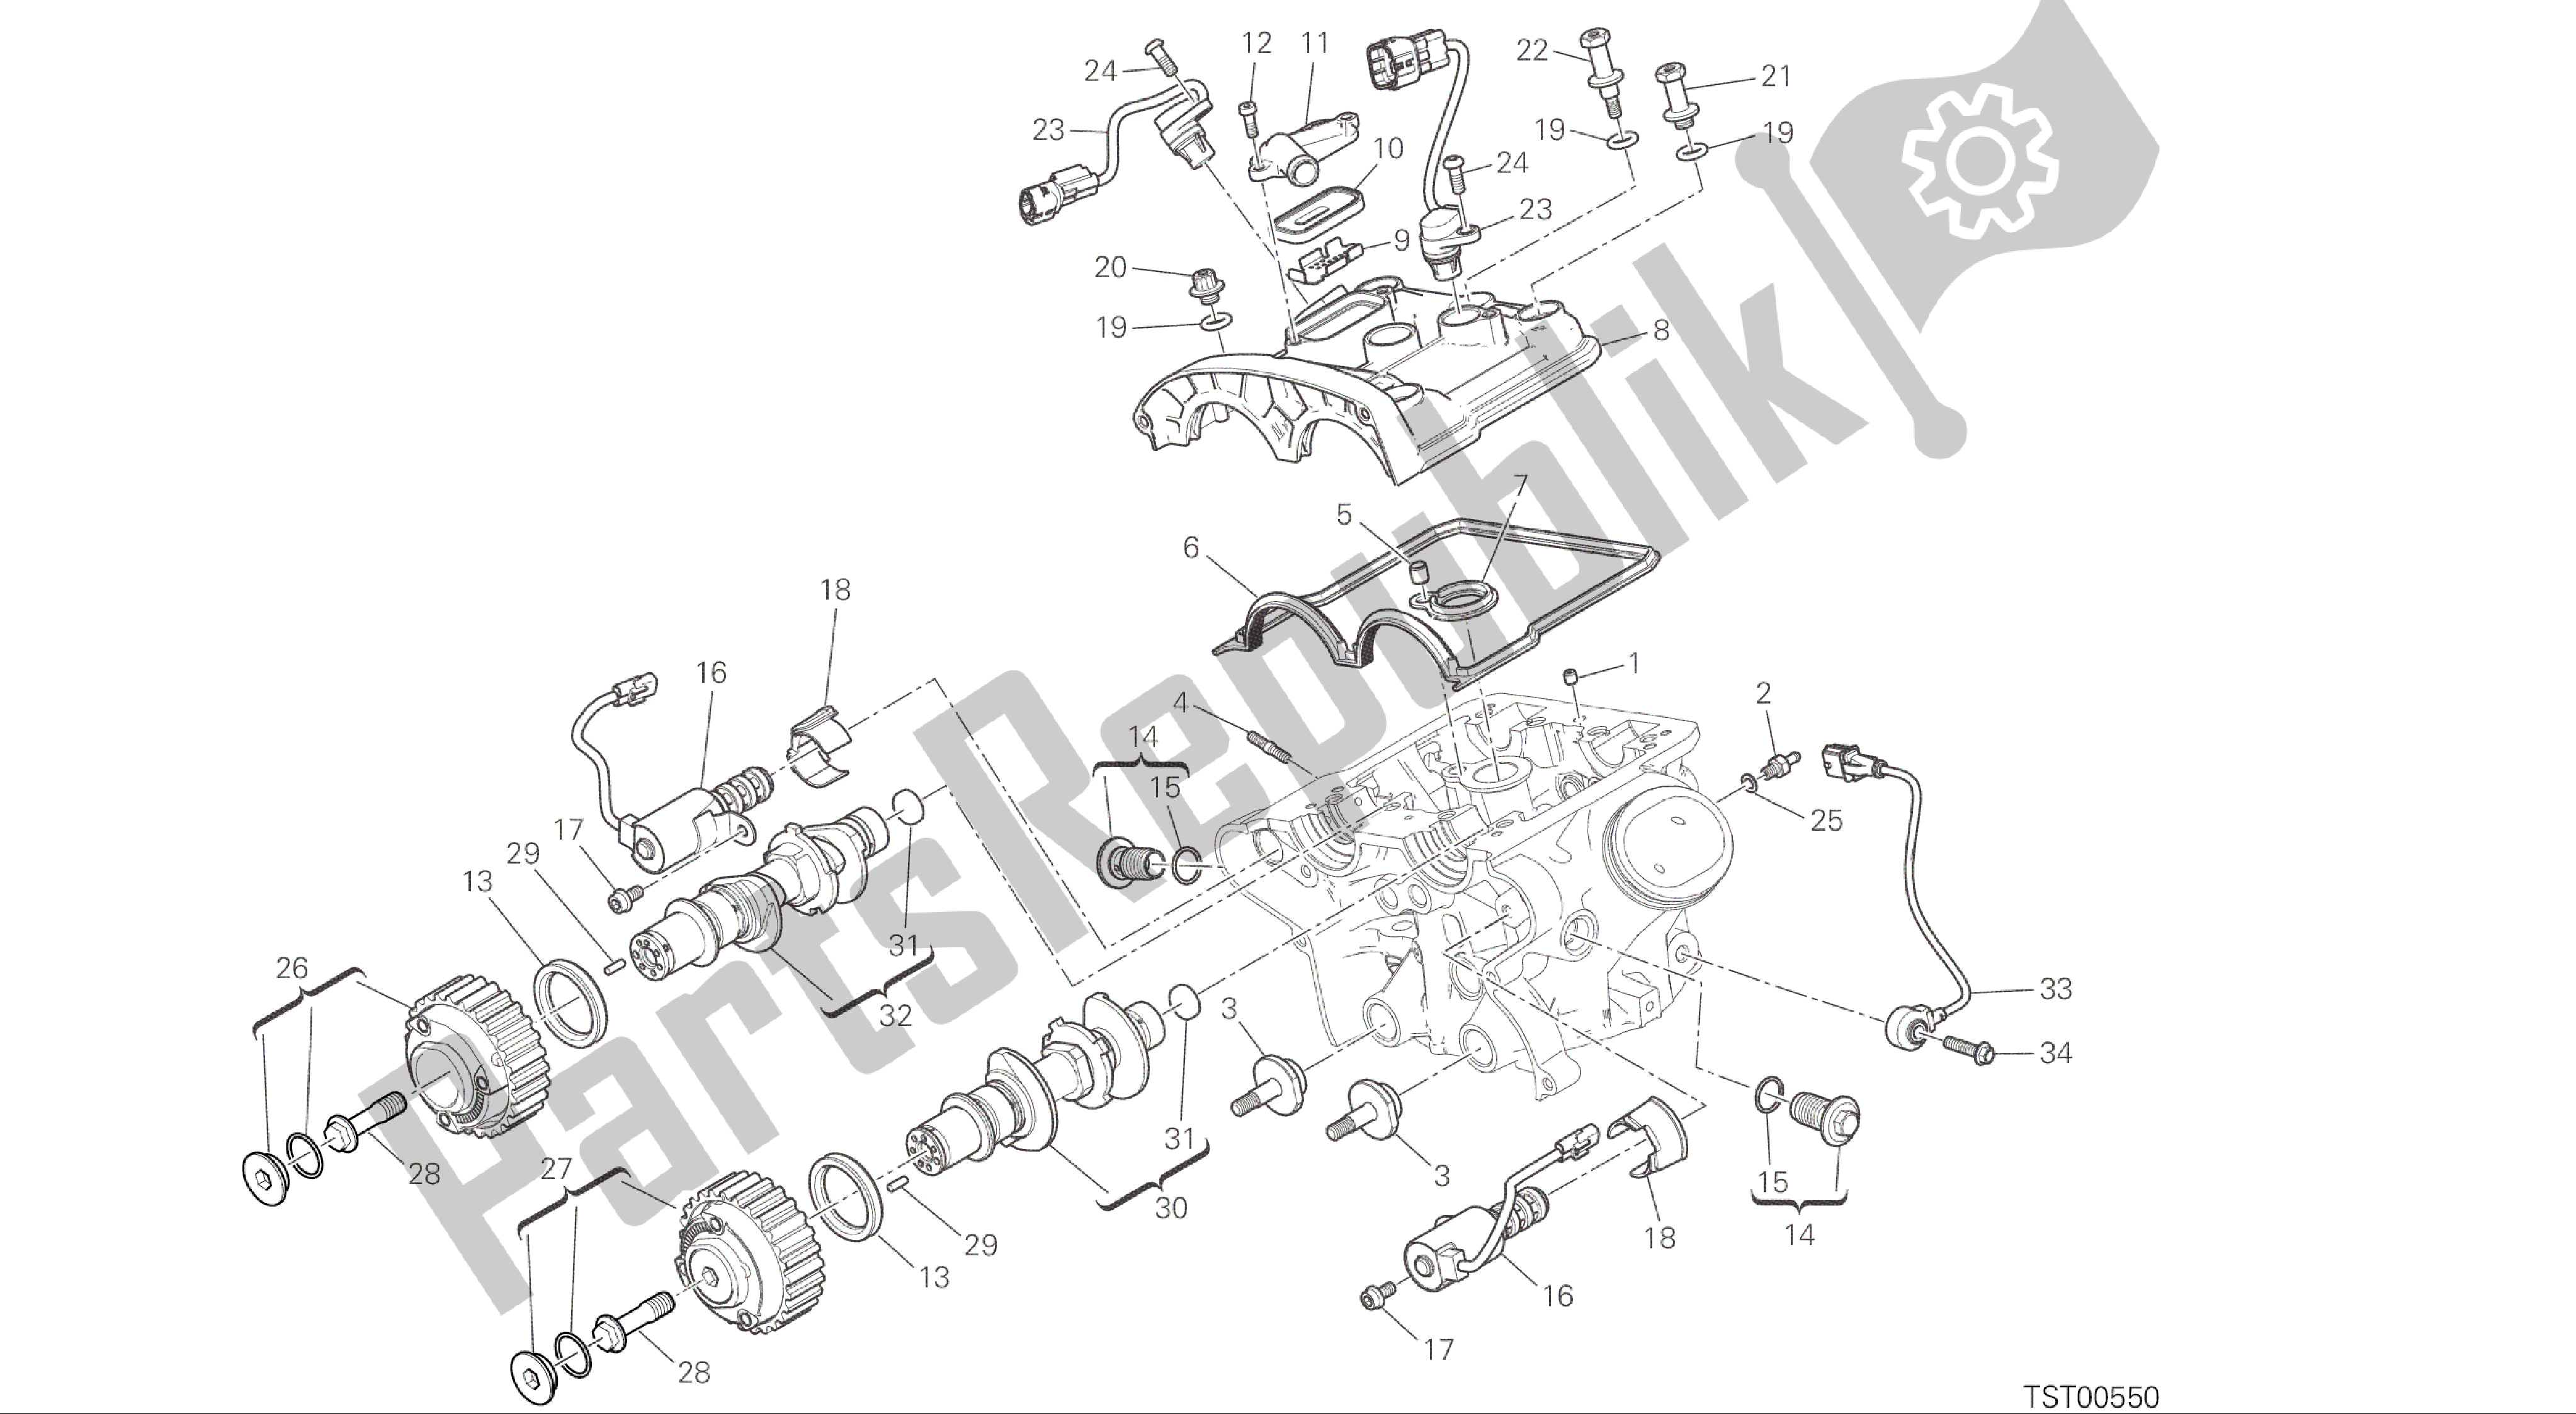 Tutte le parti per il Disegno 13a - Testata Verticale - Fasatura [mod: Ms1200; Xst: Aus, Eur, Fra, Jap] Gruppo Motore del Ducati Multistrada 1200 2015